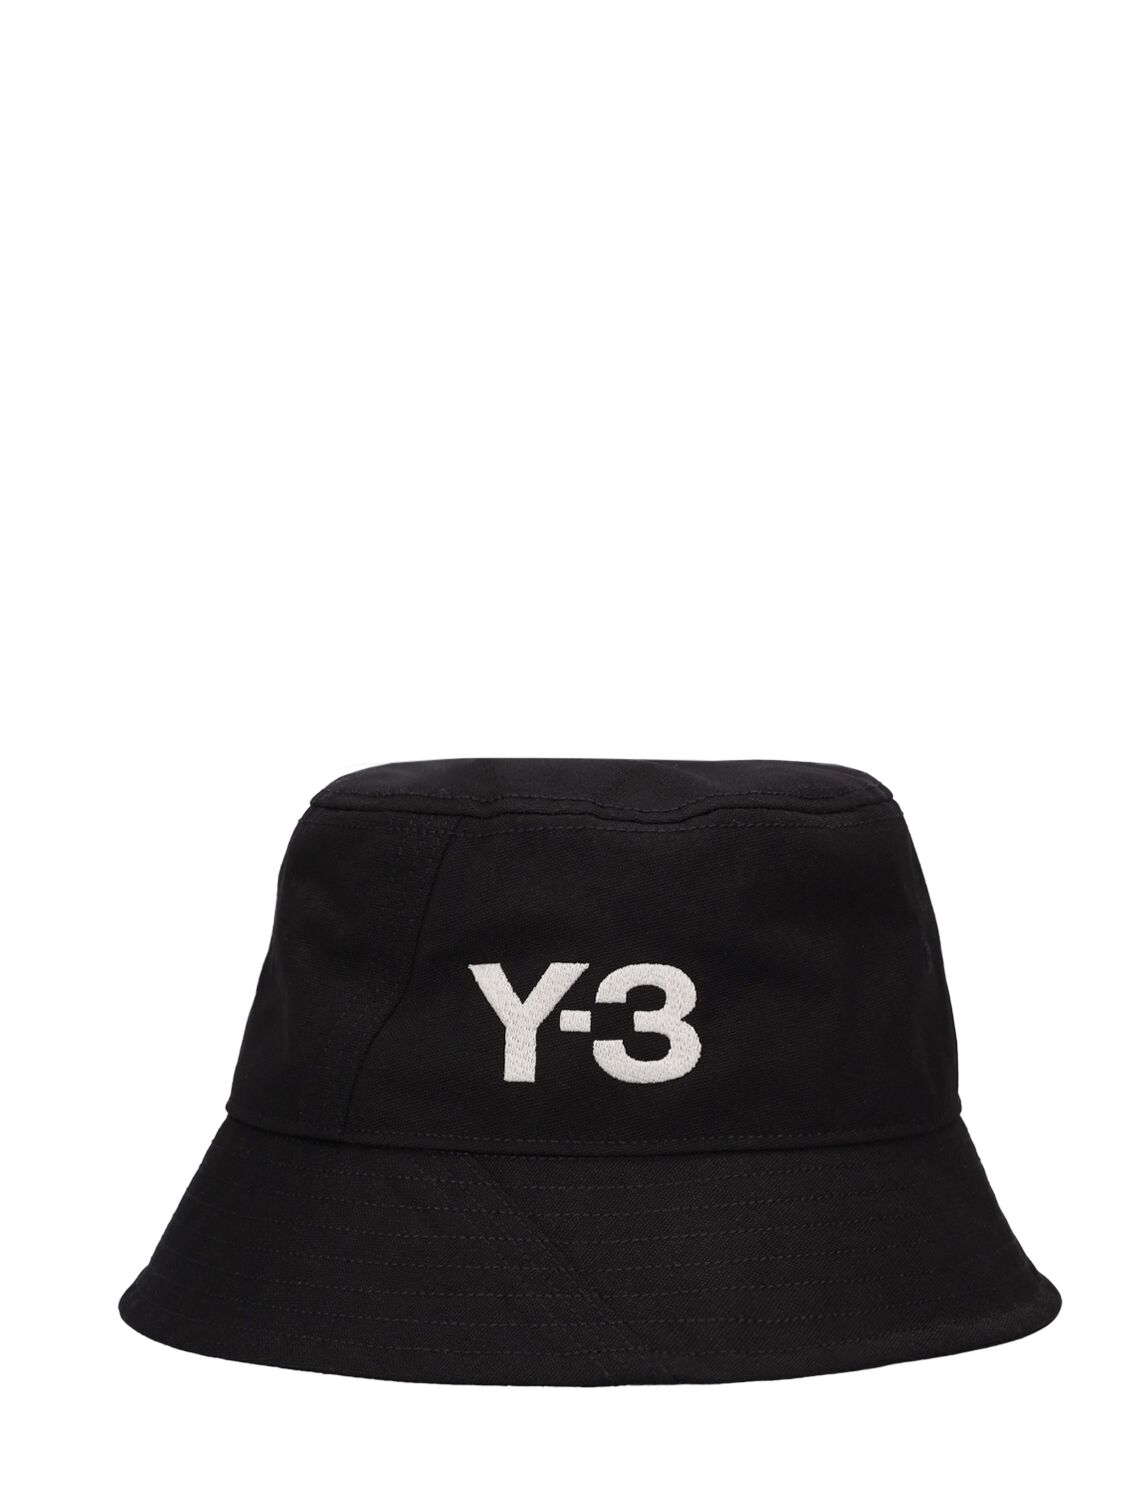 Y-3 LOGO BUCKET HAT